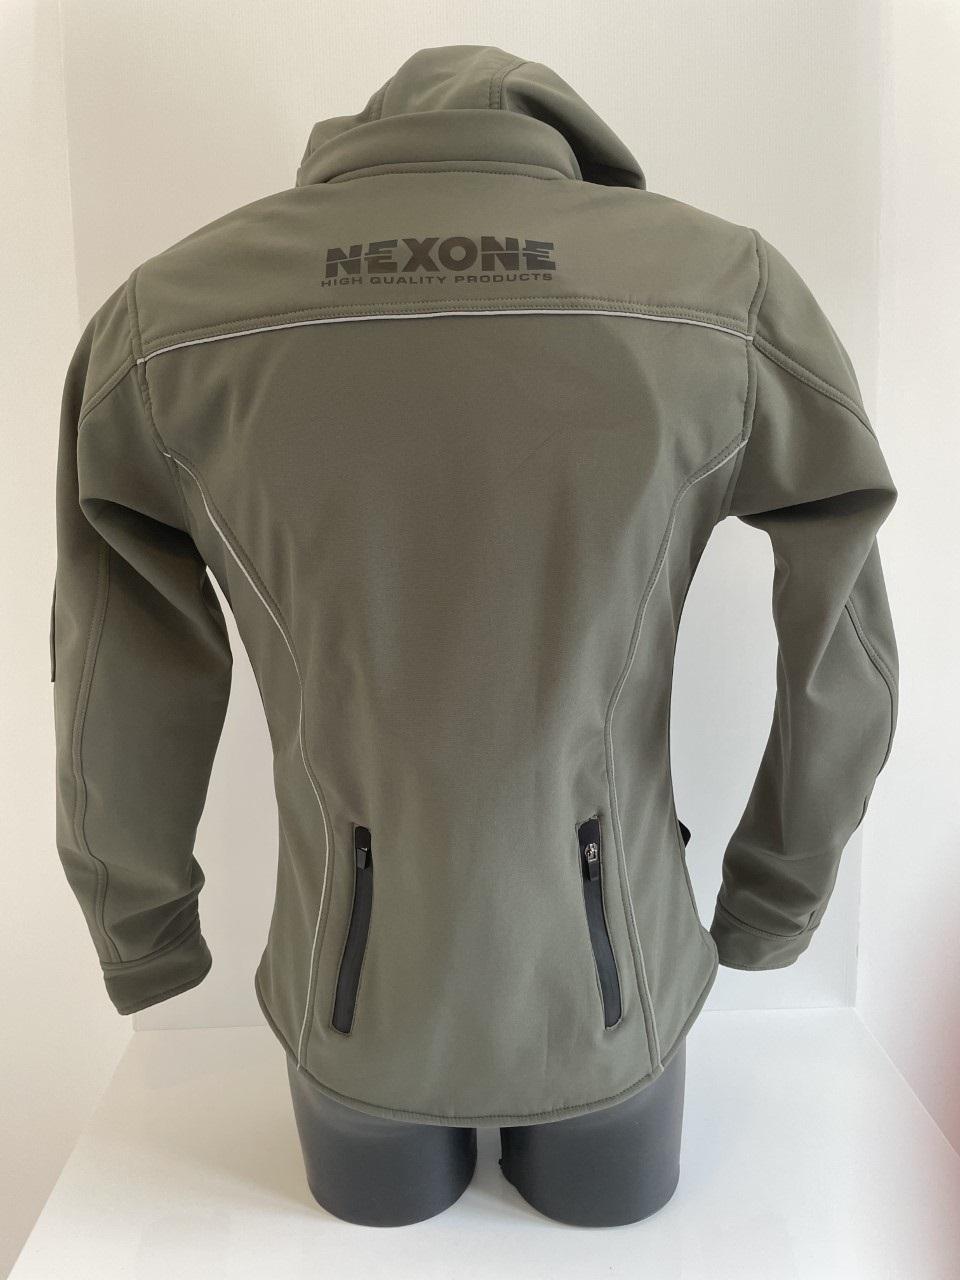 Blouson veste pour moto Femme Nexone Soft-Shell kaki Taille XL Lady homologué CE